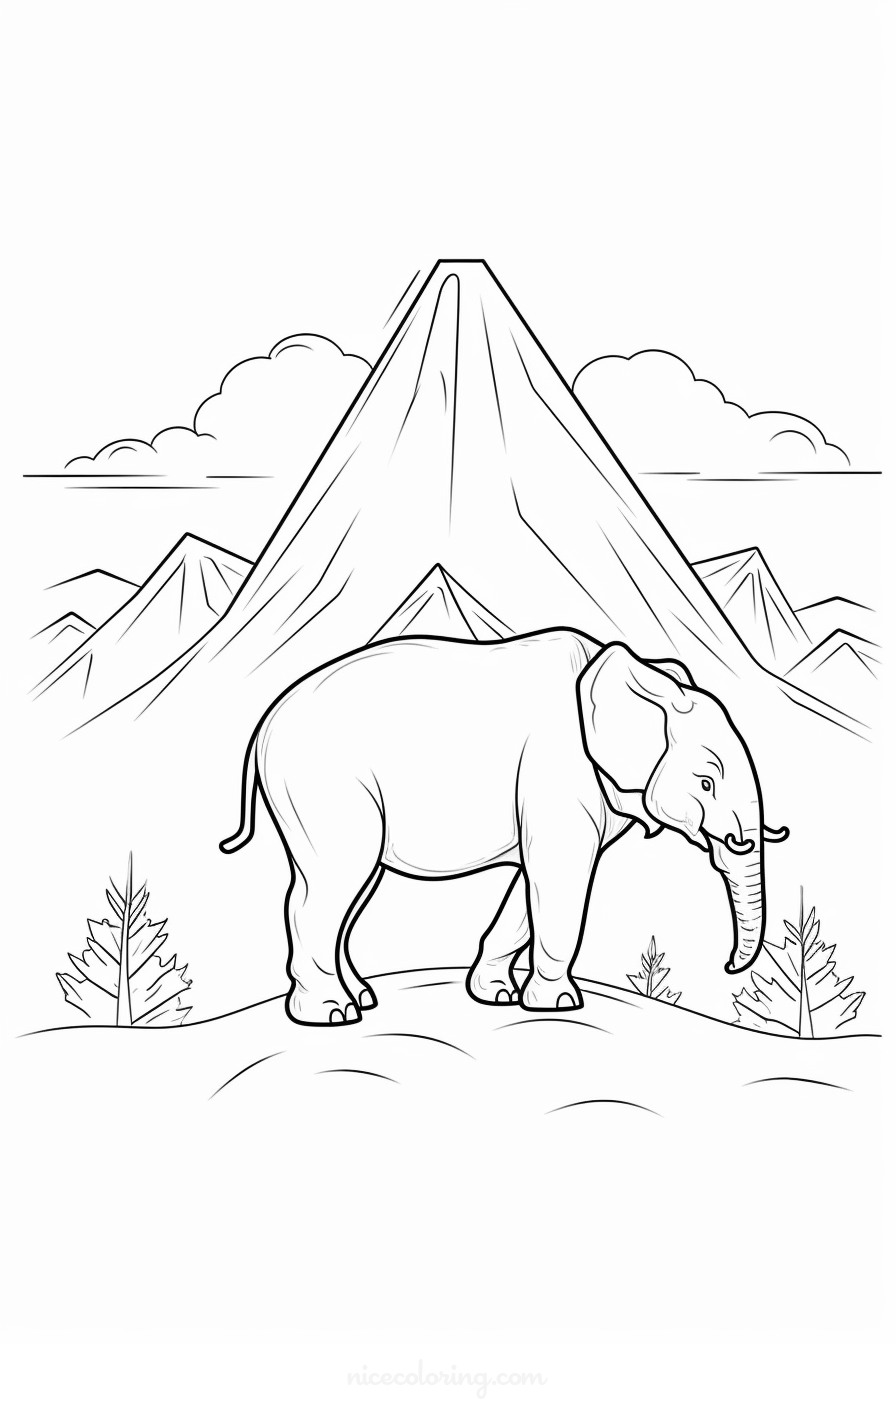 Famille d'éléphants dans un cadre forestier à colorier